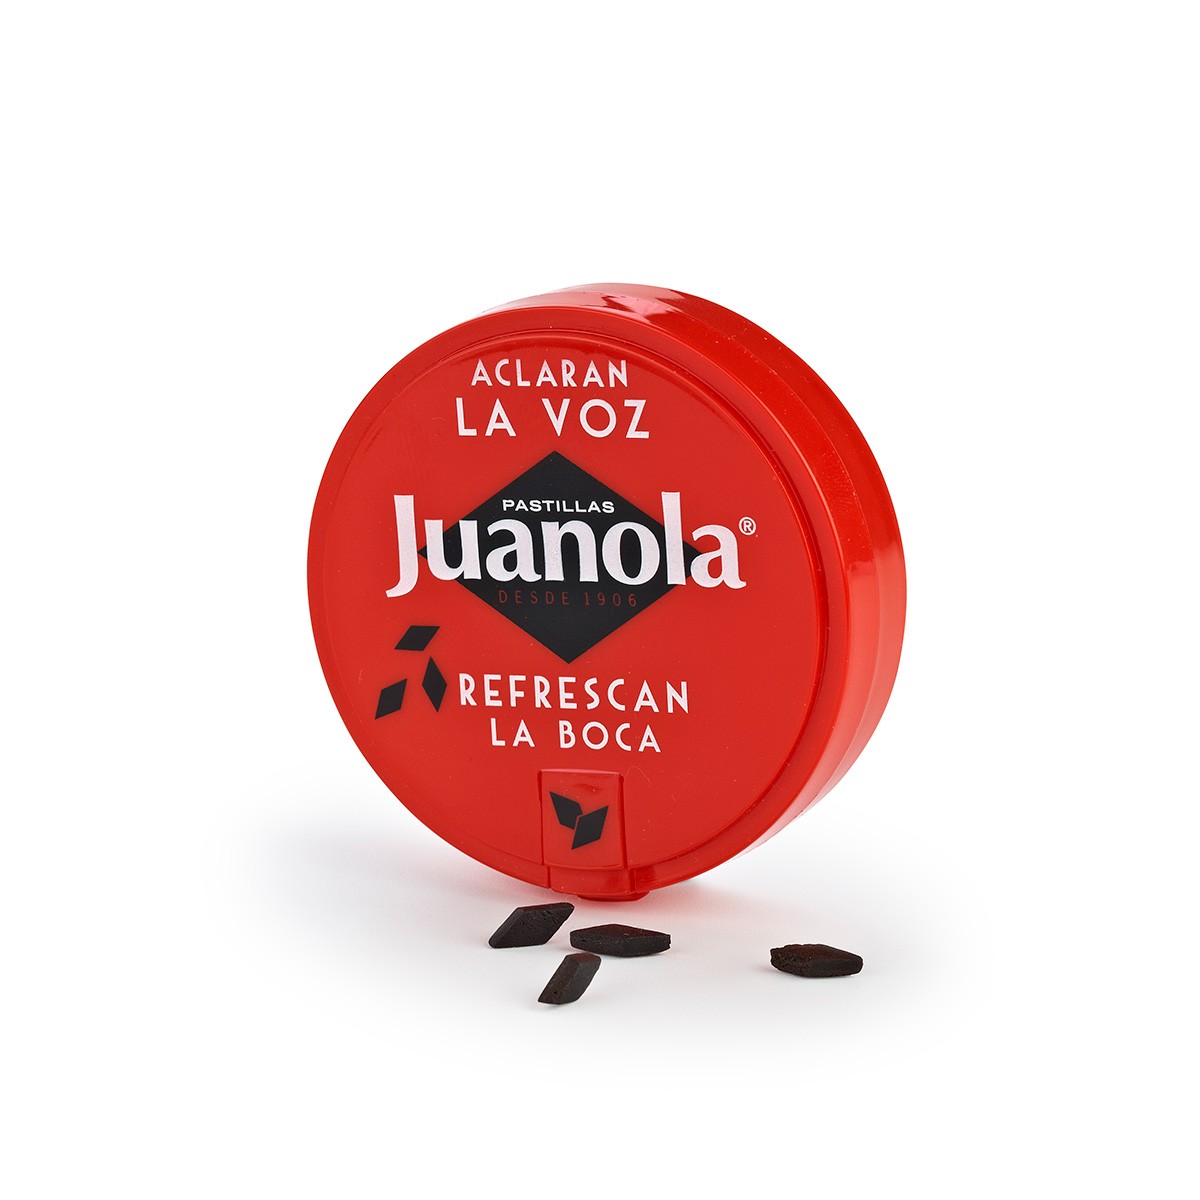 Juanola pastillas 30 gr